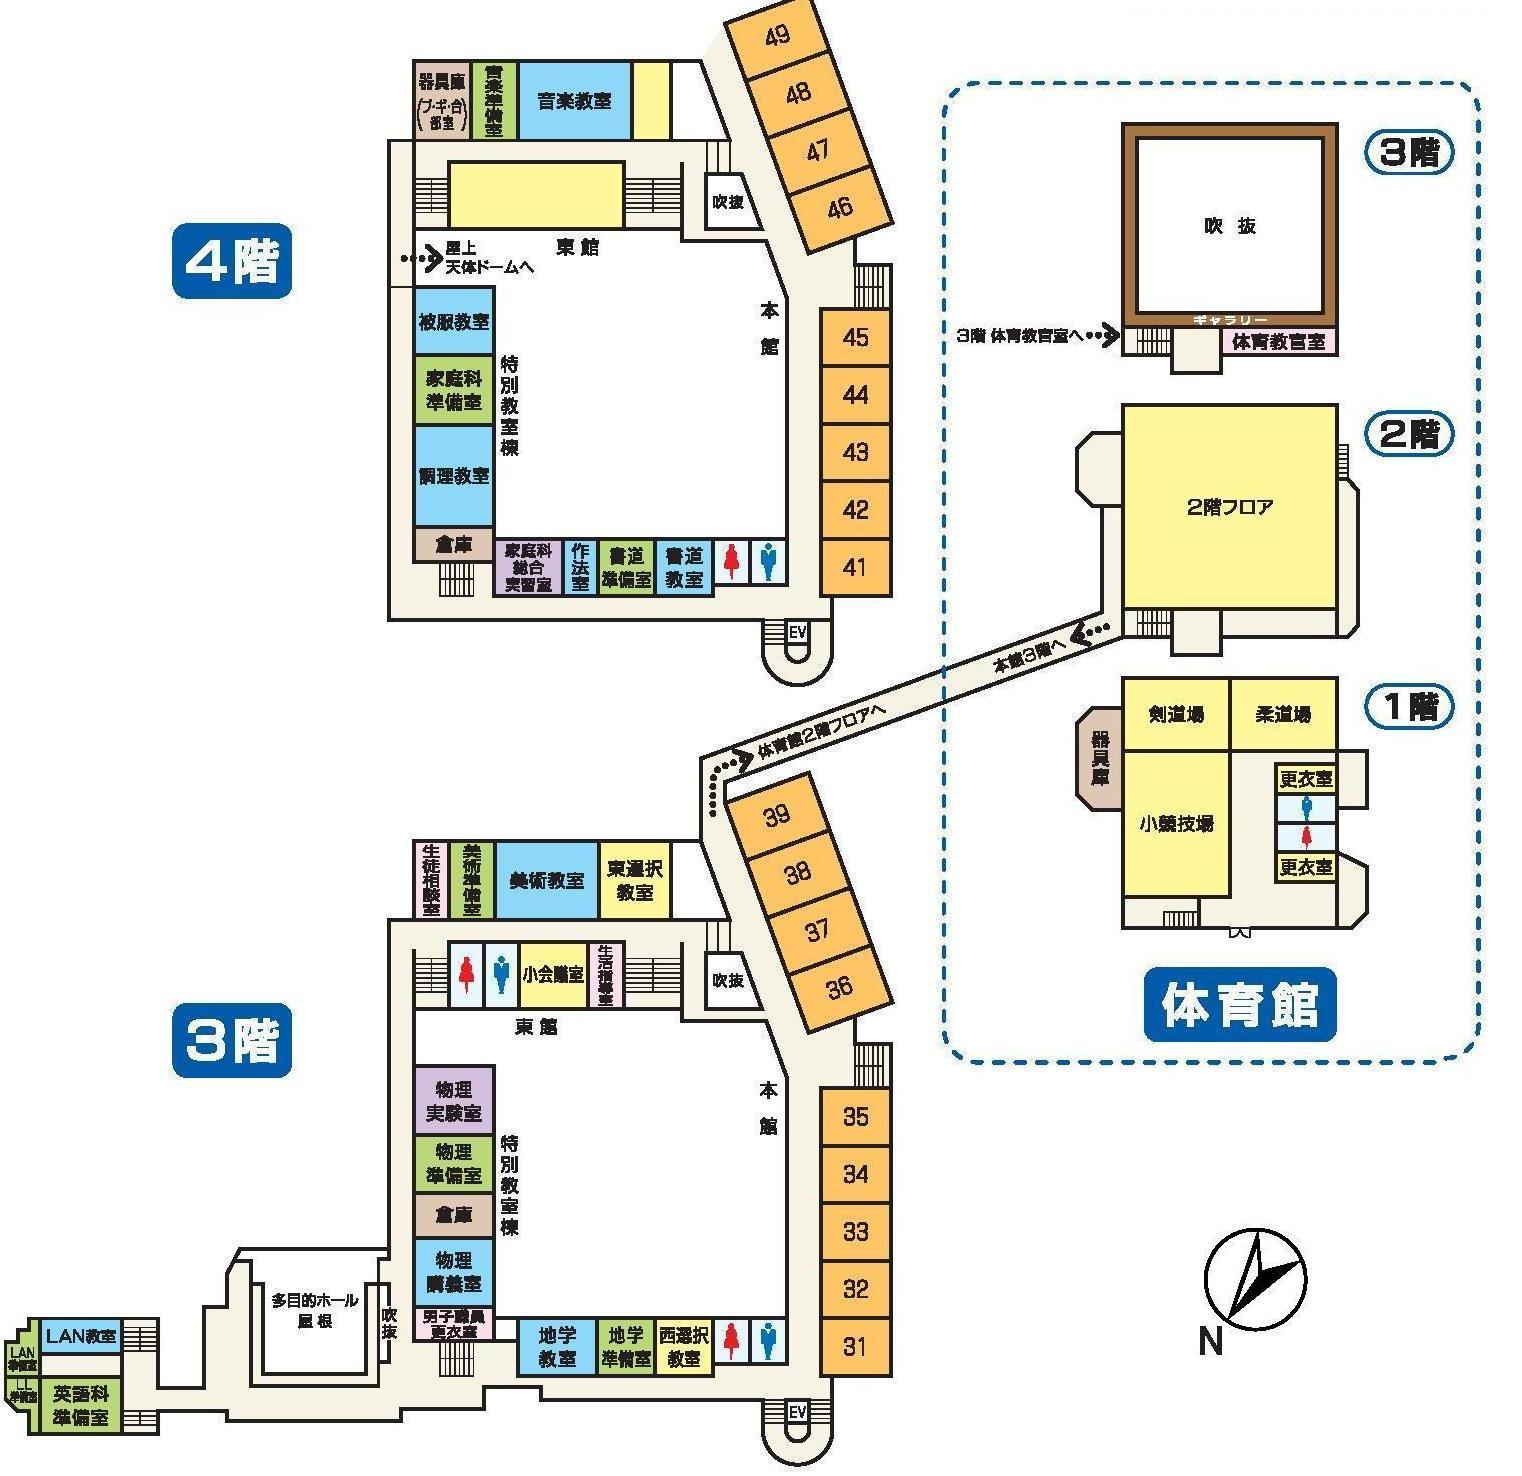 岸和田高校内マップ3,4階